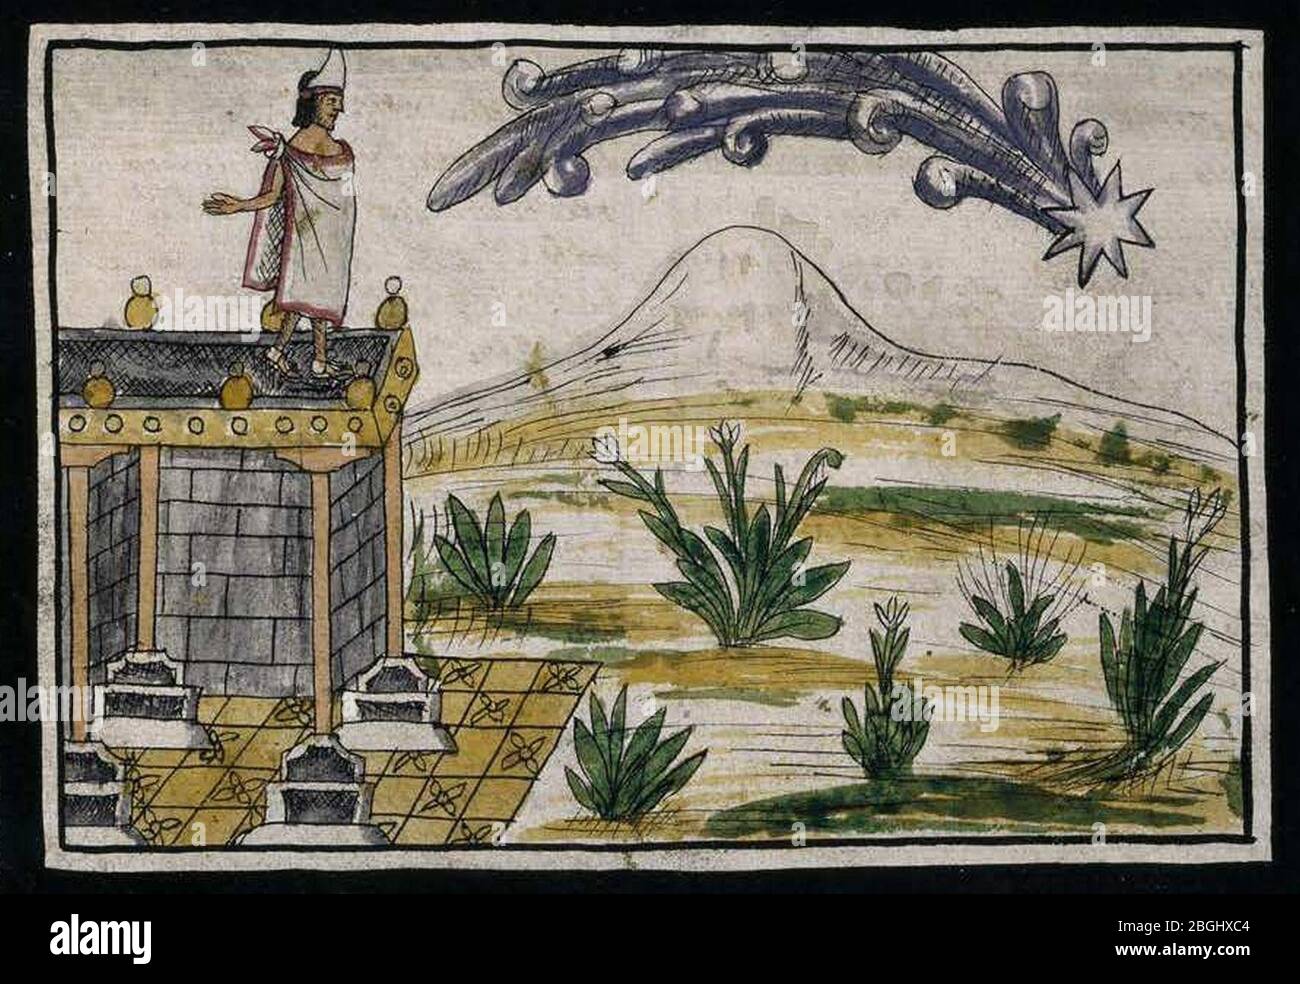 Historia de las Indias de Nueva España e islas de la tierra firme Manuscrito f. 182r. Stock Photo